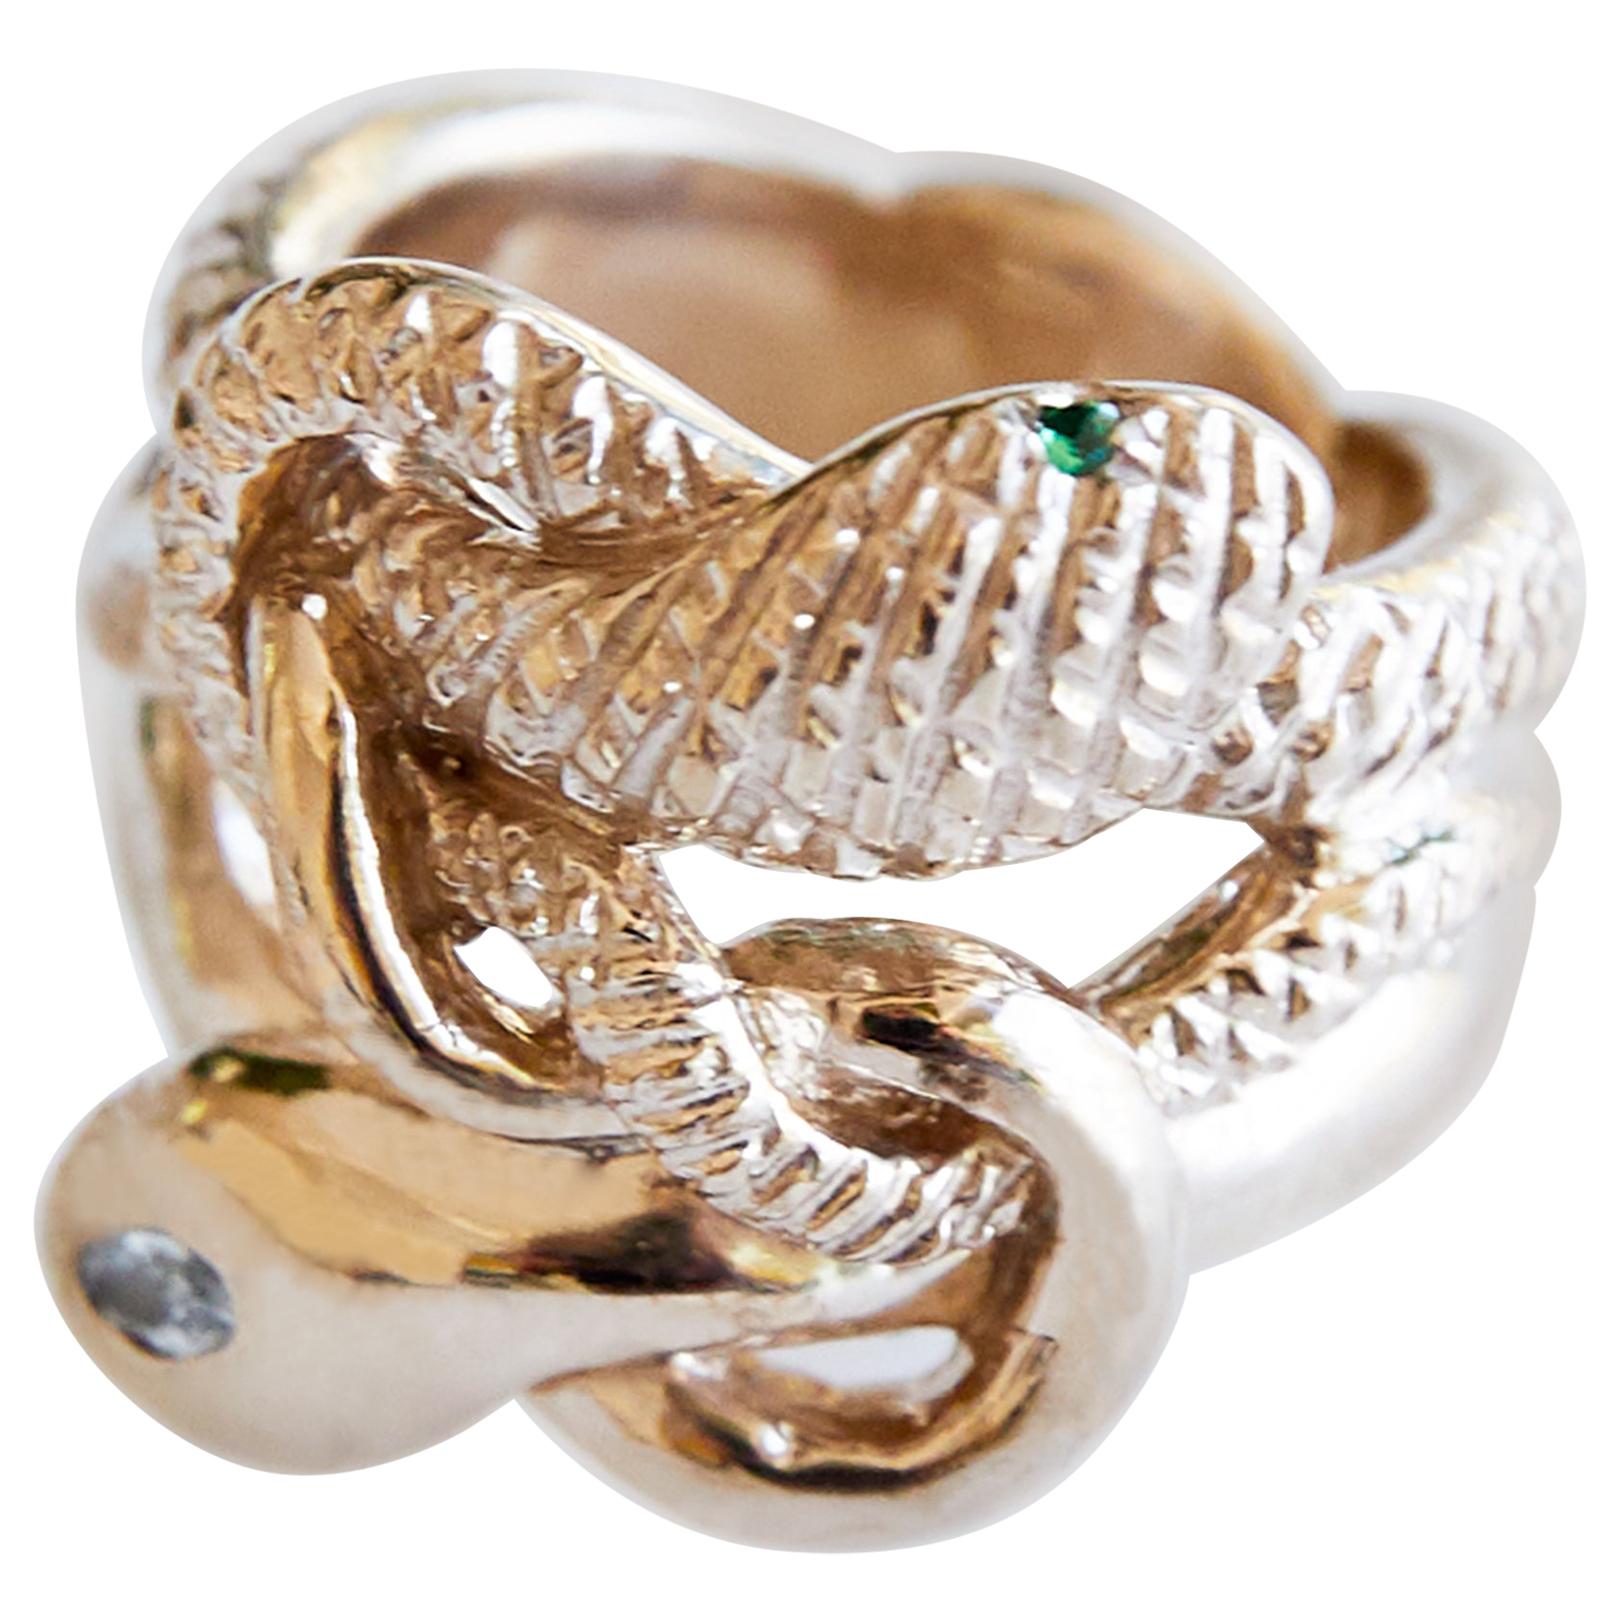 Weißer Diamant Smaragd Schlange Ring Cocktail Ring Bronze J Dauphin

1 weißer Marquis-Diamant 2 Stück Smaragd 2 Stück Rubin 
J DAUPHIN 